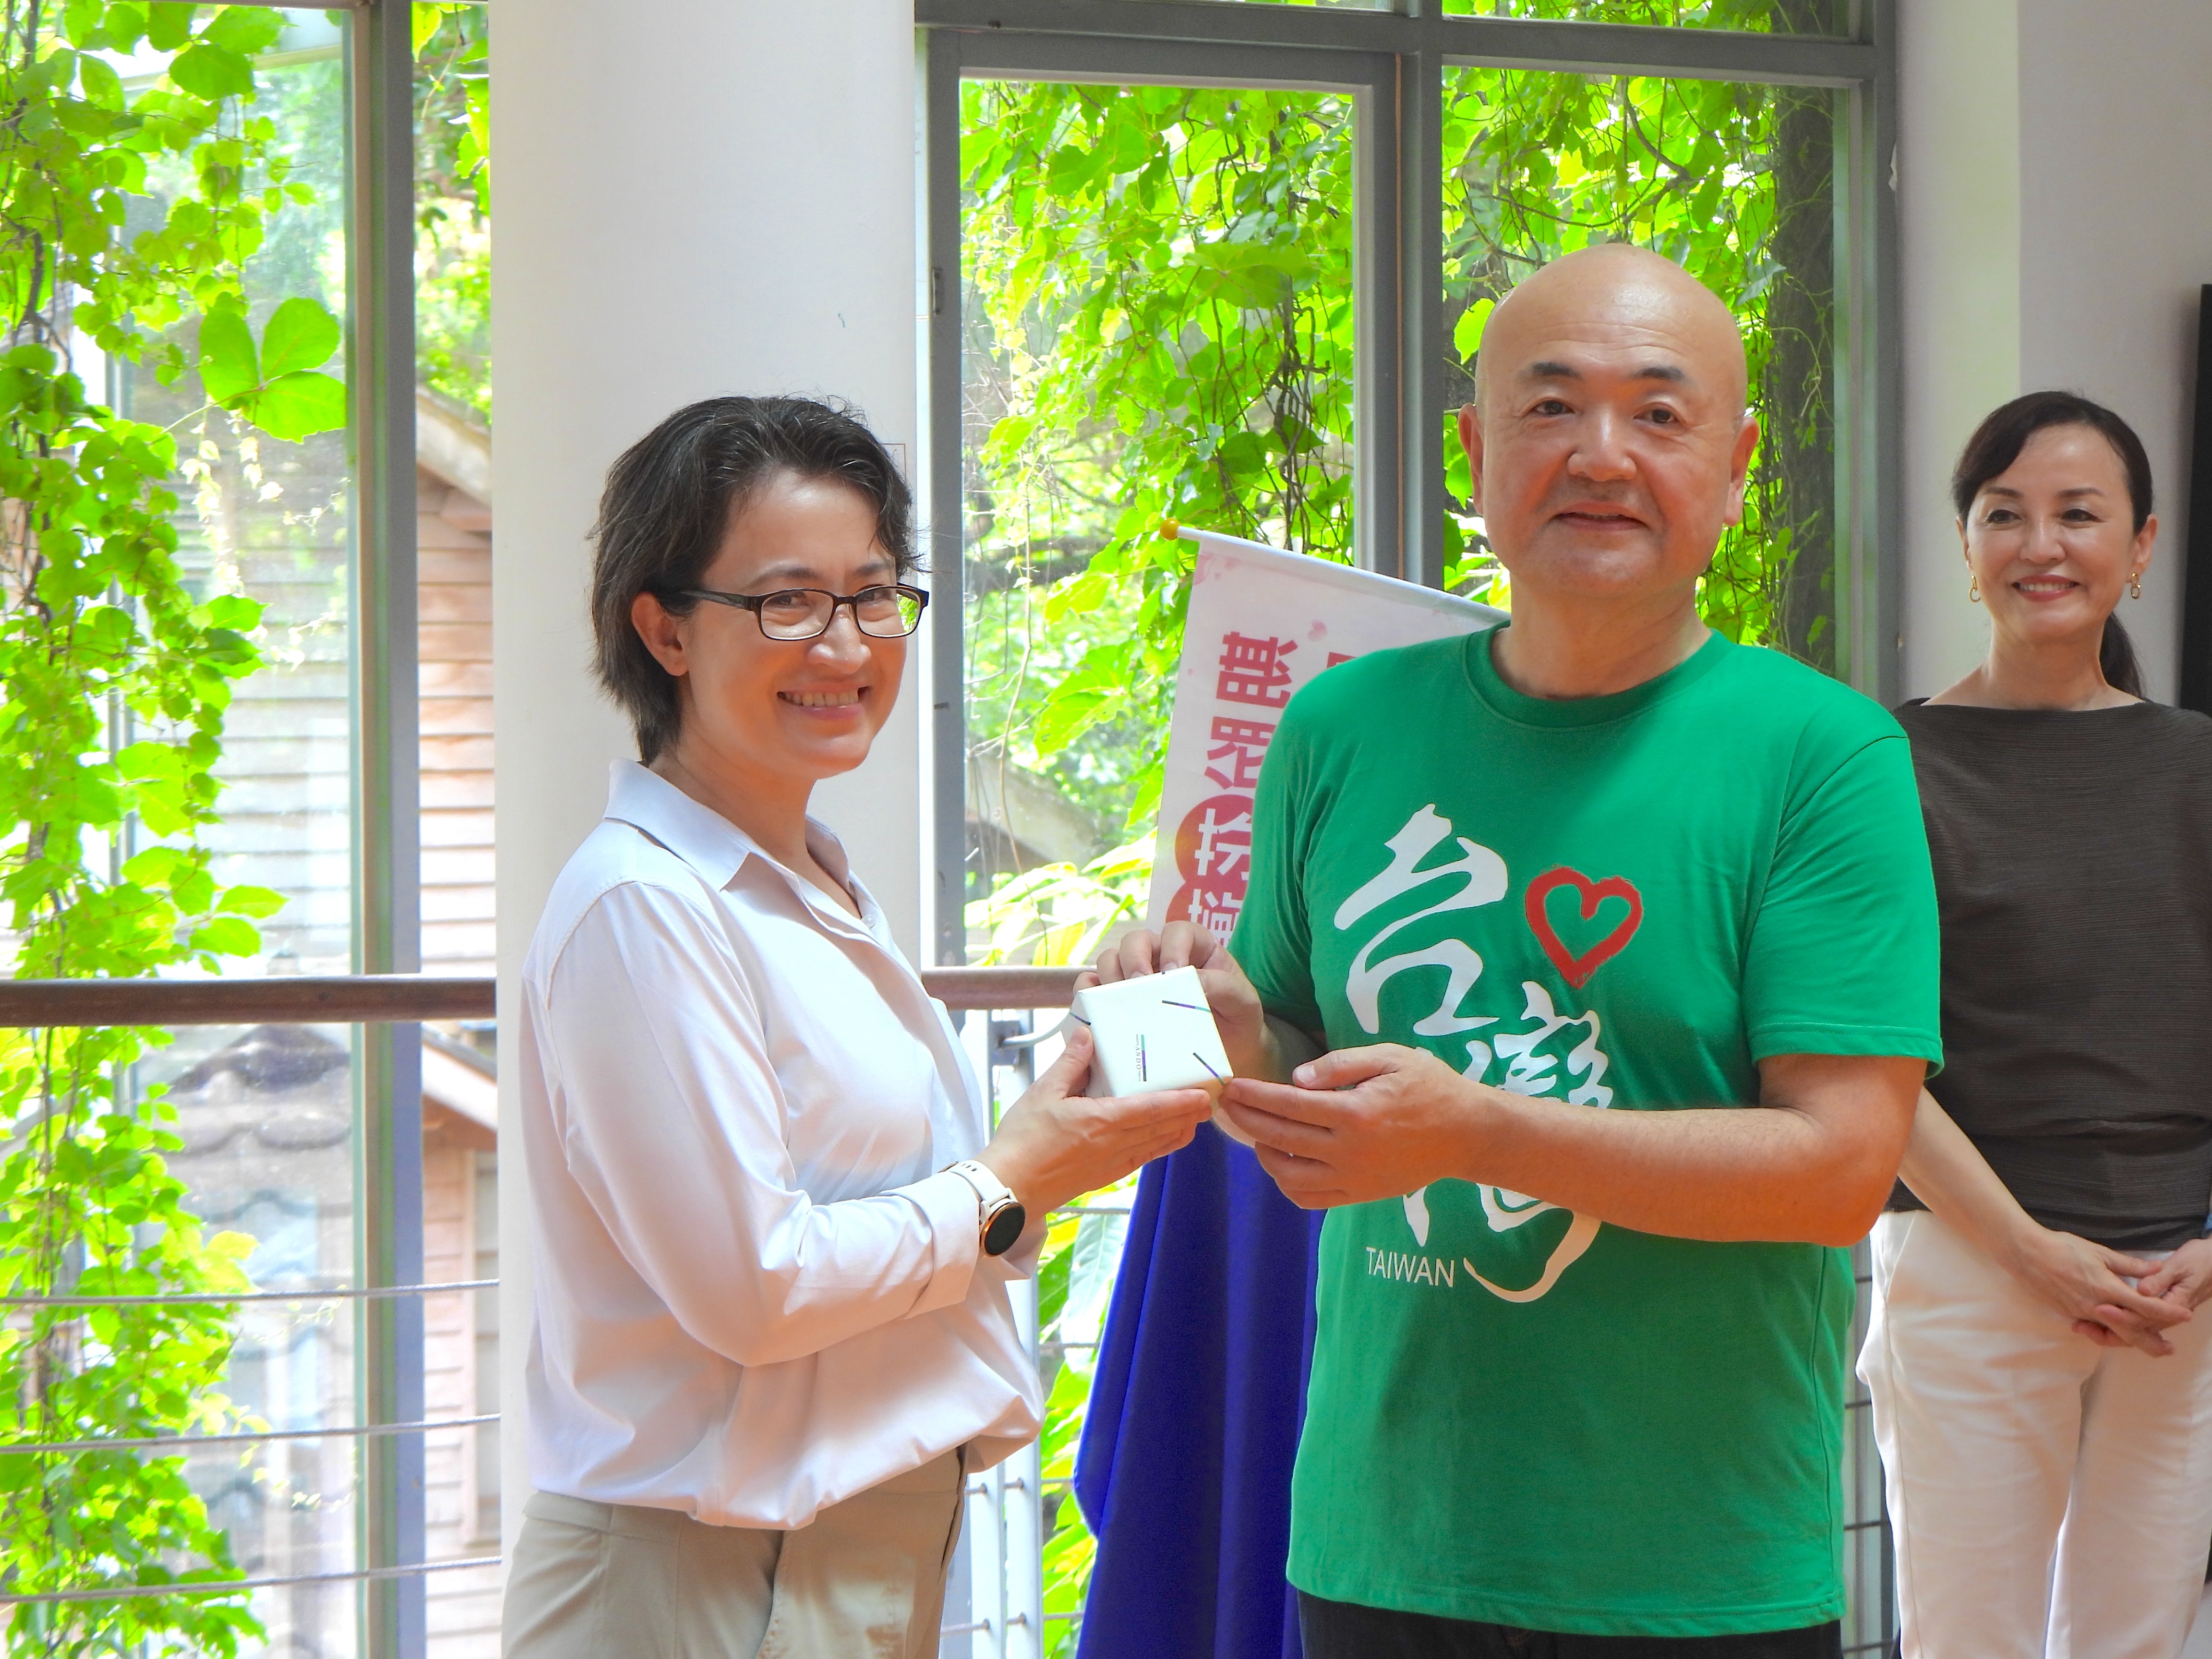 日本台湾交流协会台北事务所代表片山和之（右）赠送礼物给副总统萧美琴（左）。记者王思慧／摄影